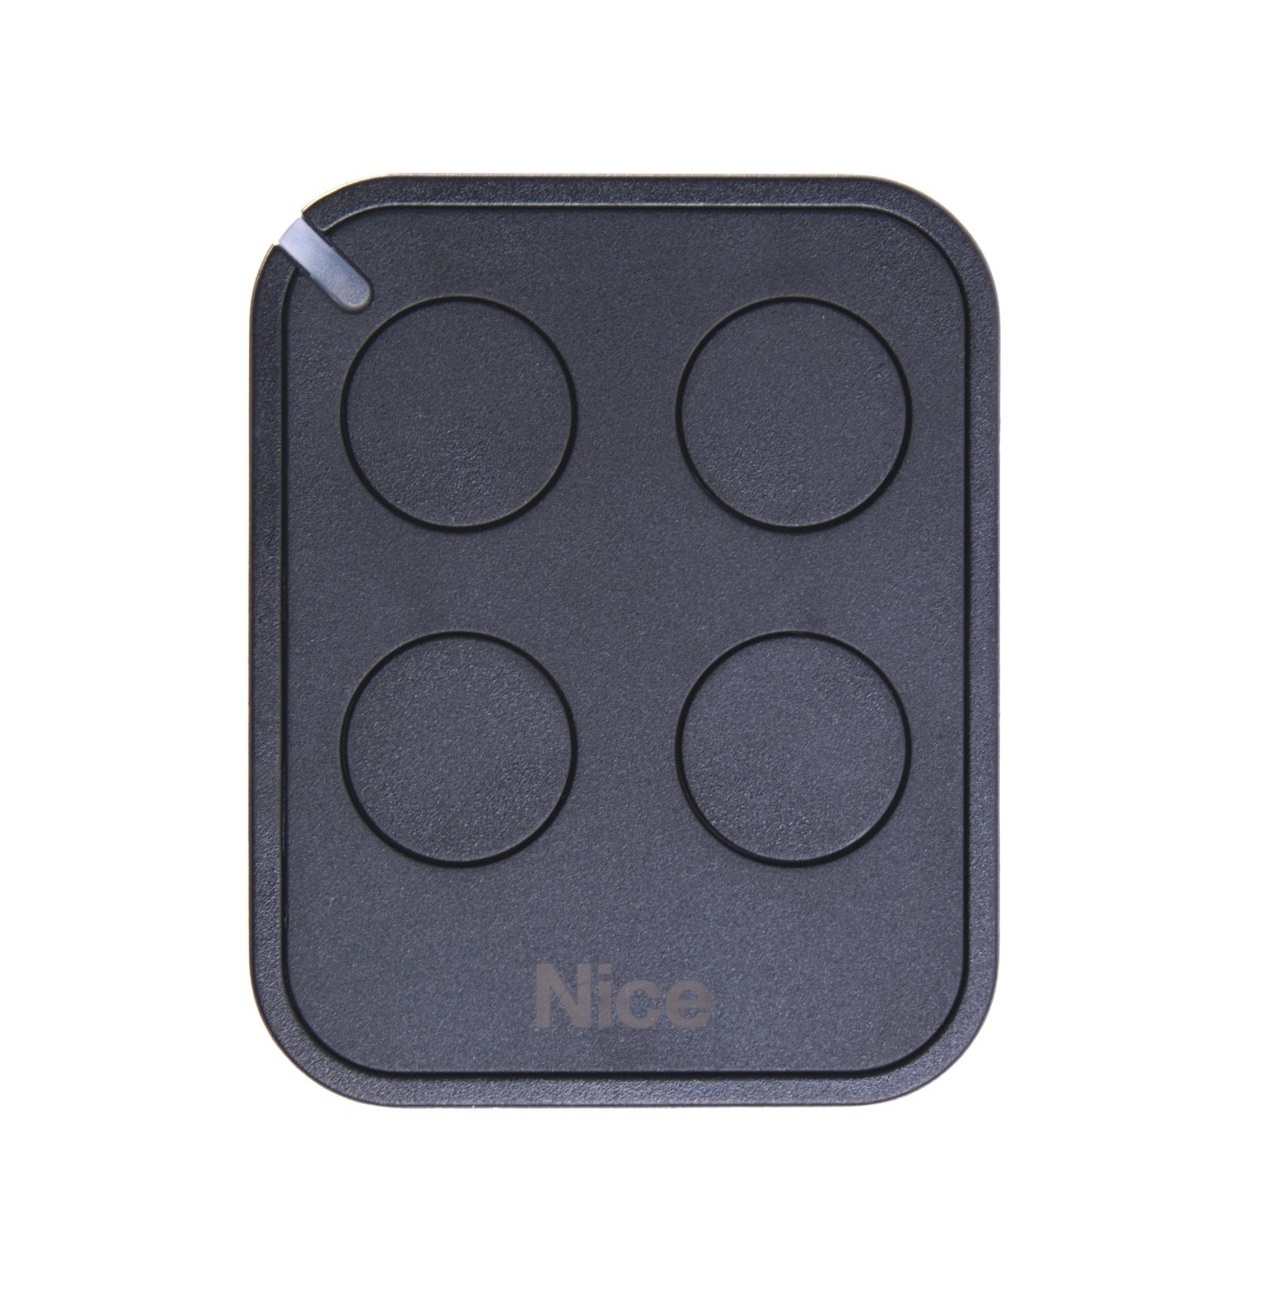 Nice FLO4RE dálkový ovladač 4 tlačítkový Nice ERA Flo4R-E, náhrada za Nice FLOR-S, FLO4R-S